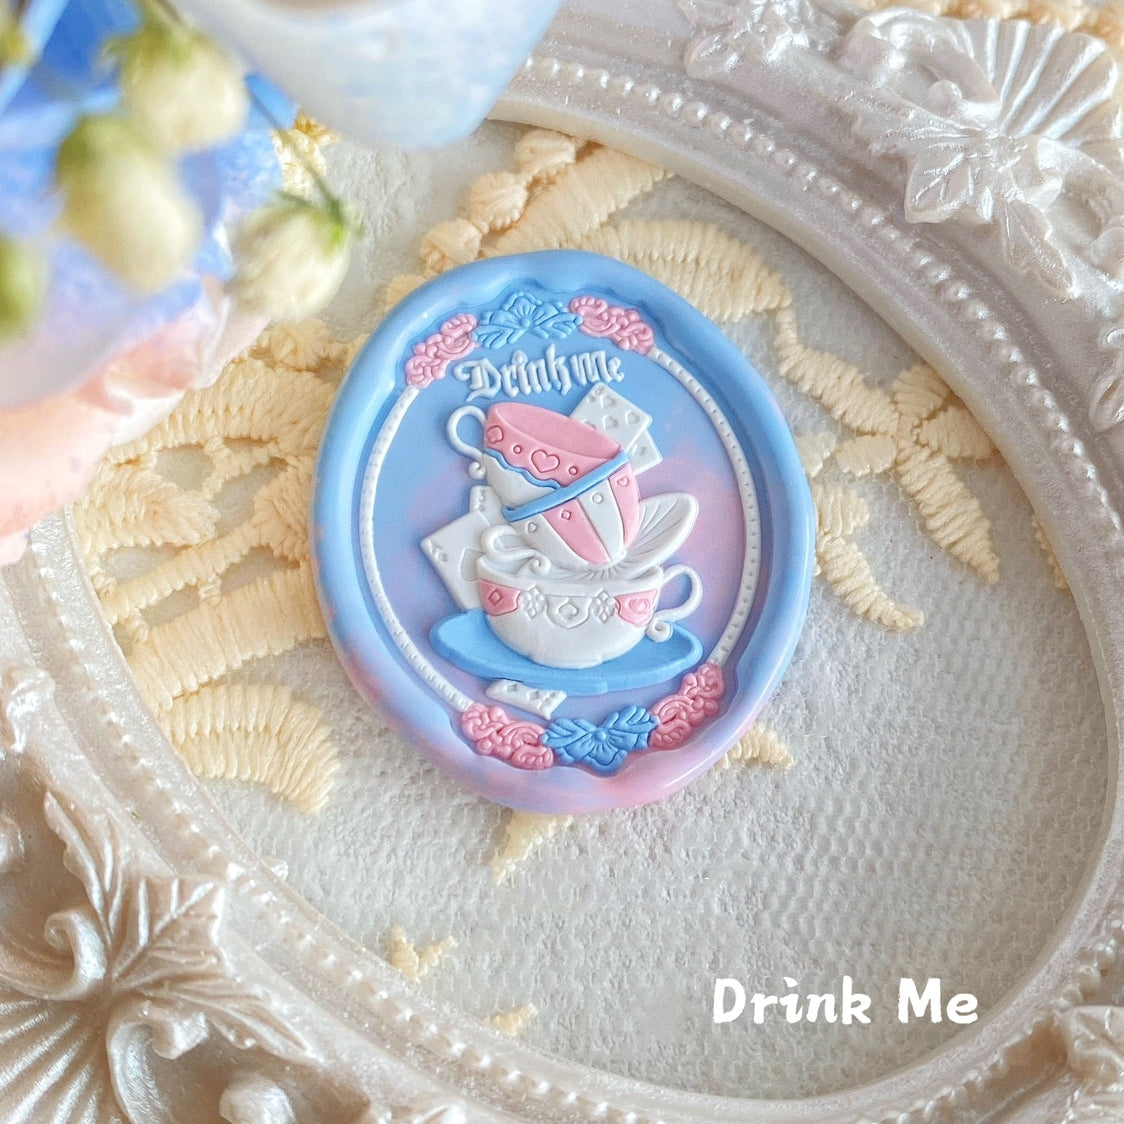 Alice in Wonderland 3D Stamps